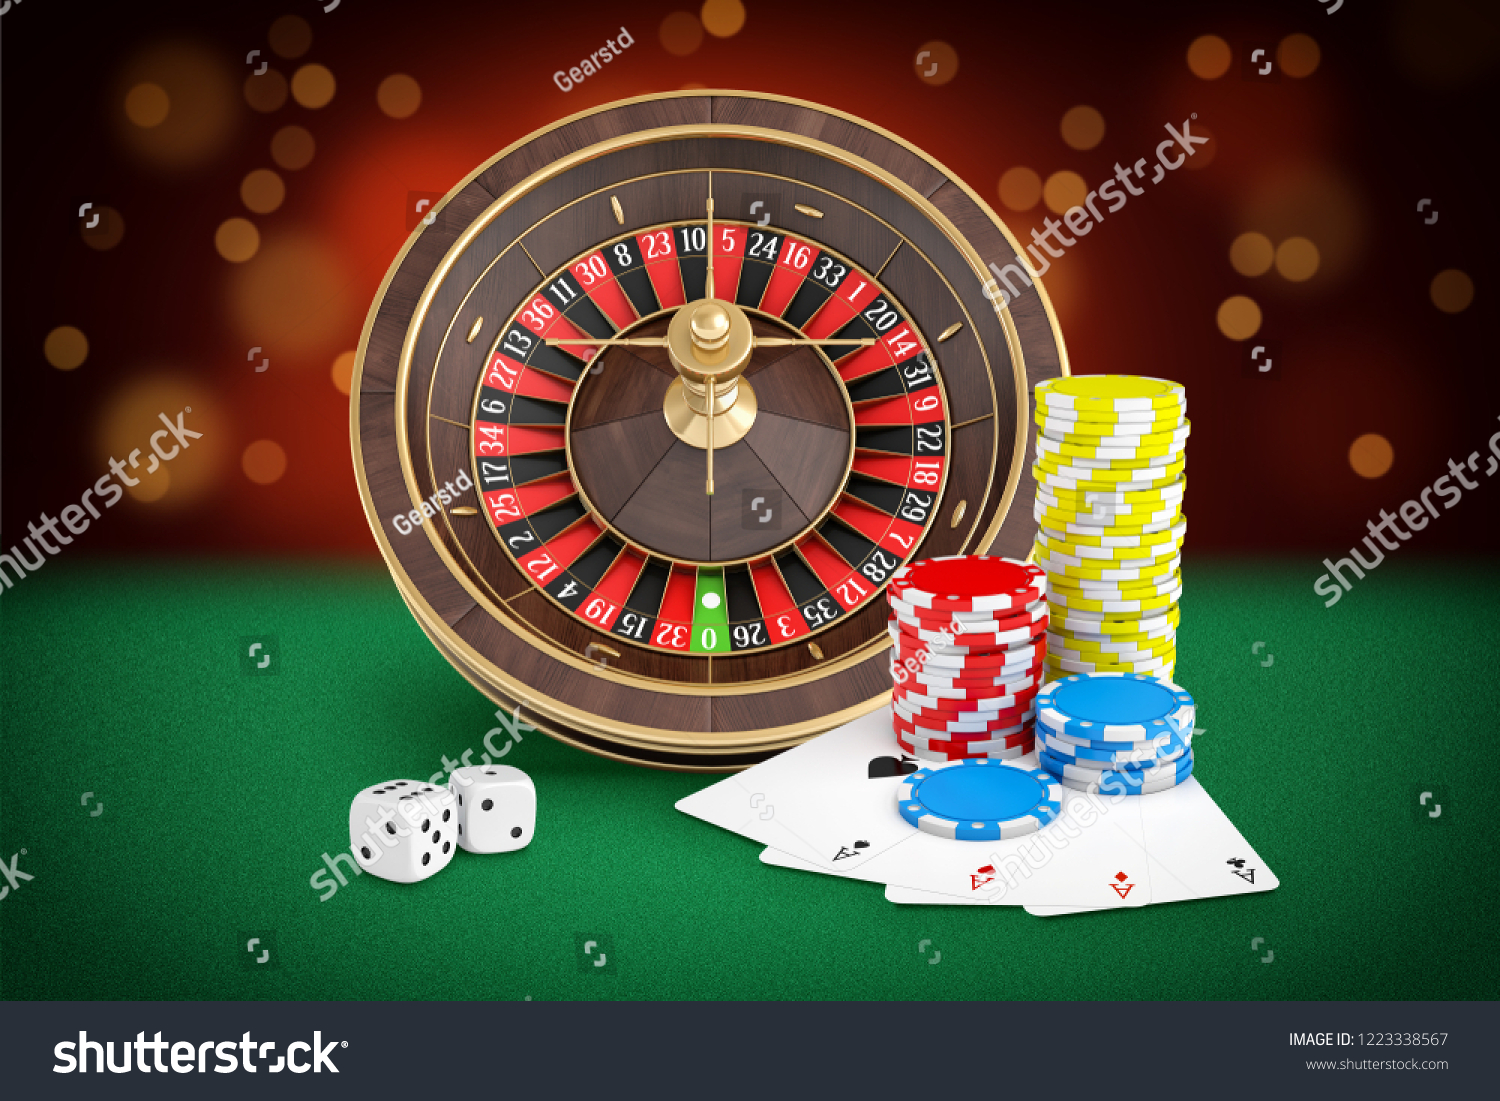 Random casino Tip